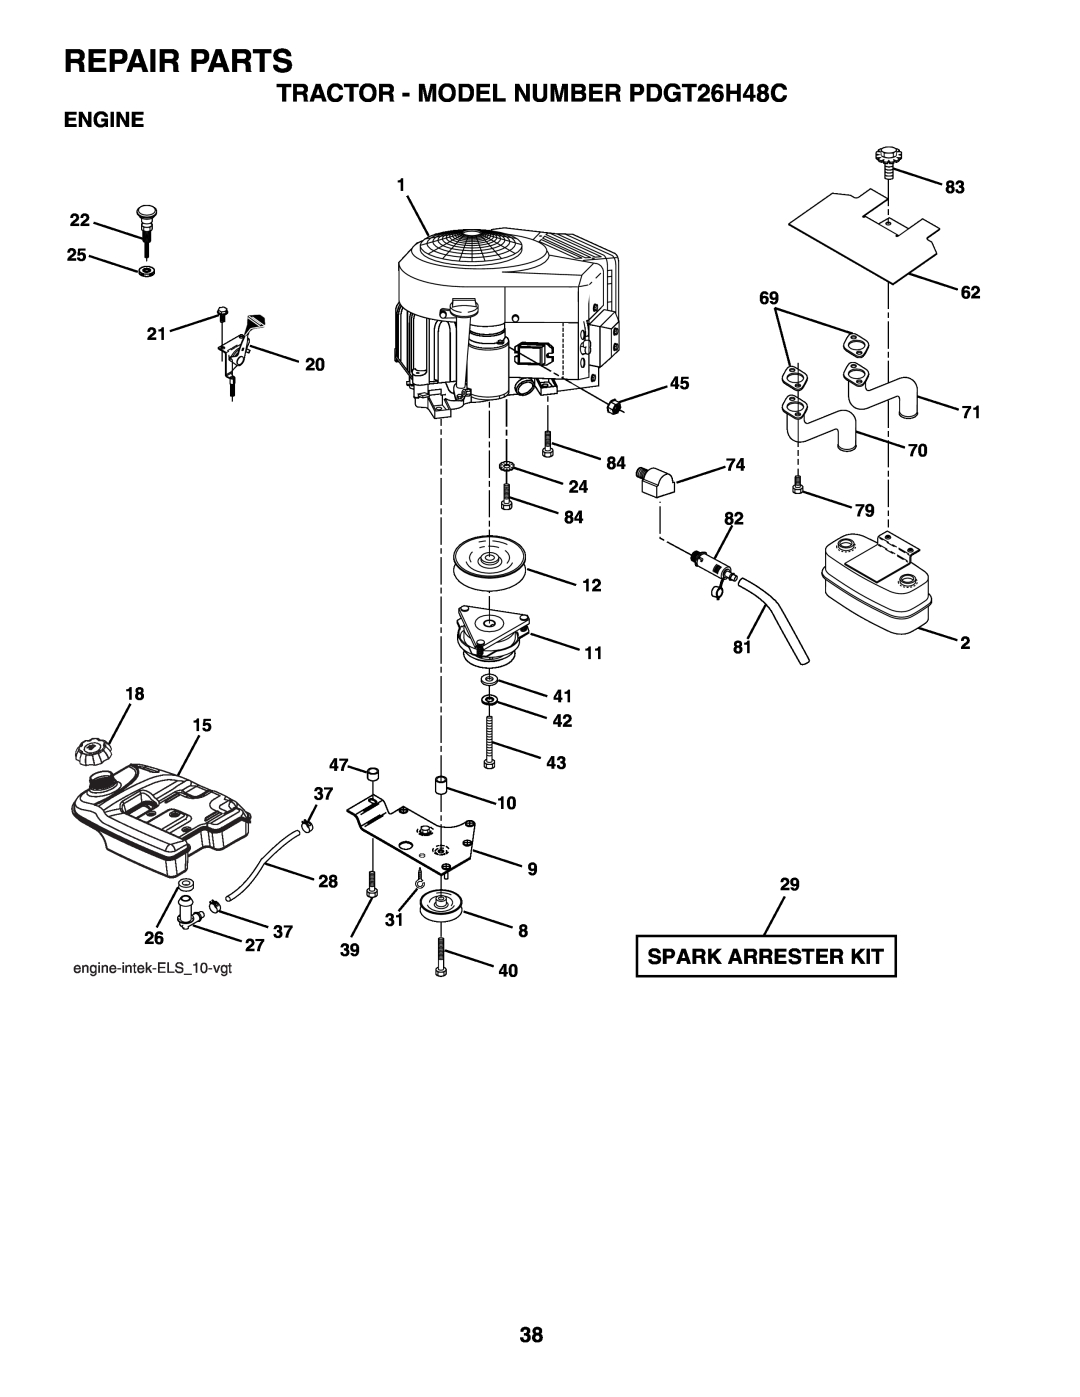 Poulan owner manual Engine, Repair Parts, TRACTOR - MODEL NUMBER PDGT26H48C, Spark Arrester Kit, 6962 